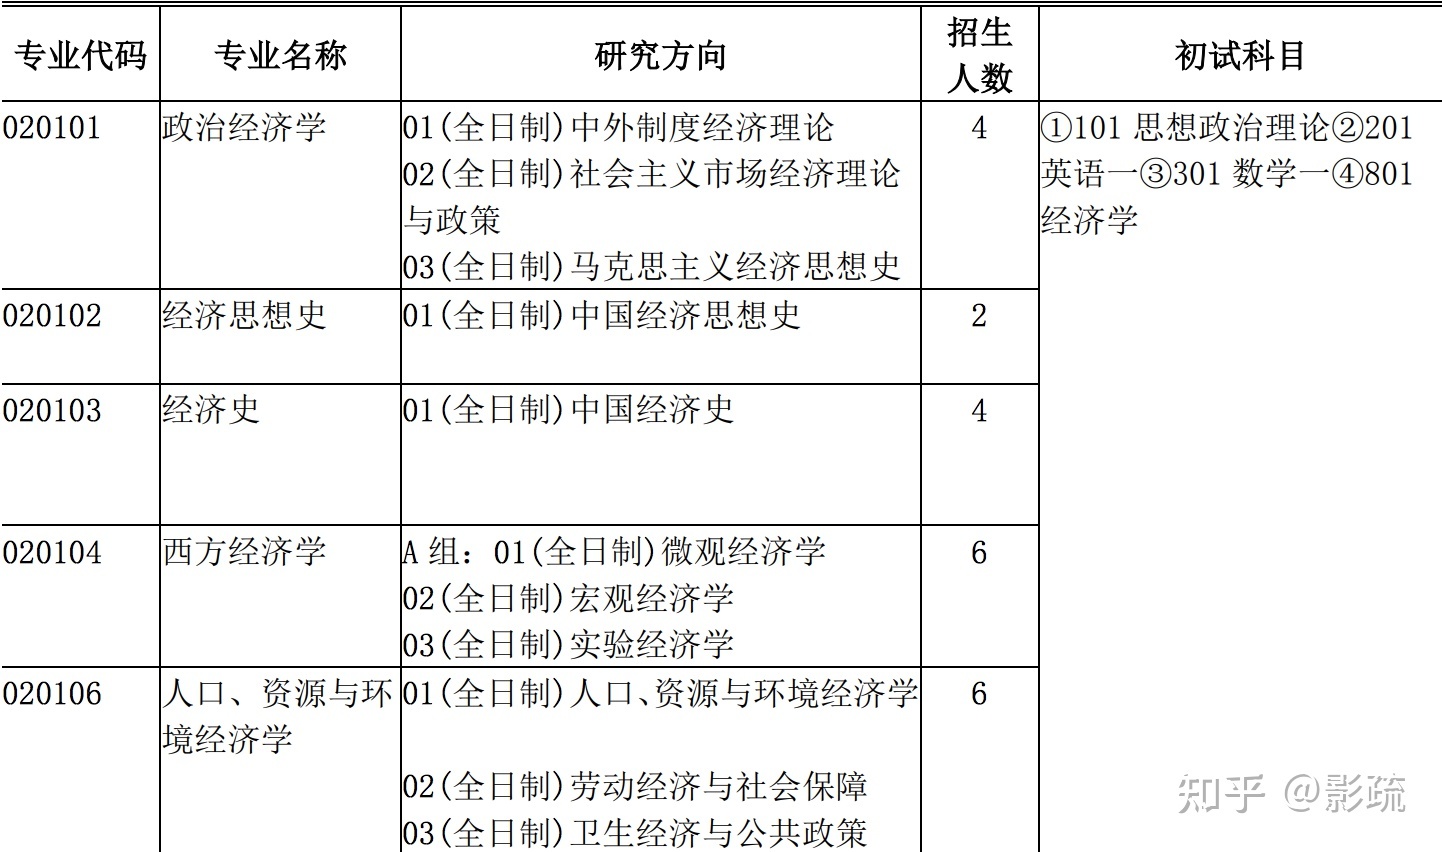 图 1. 上海财经大学的人口、资源与环境经济学初试科目